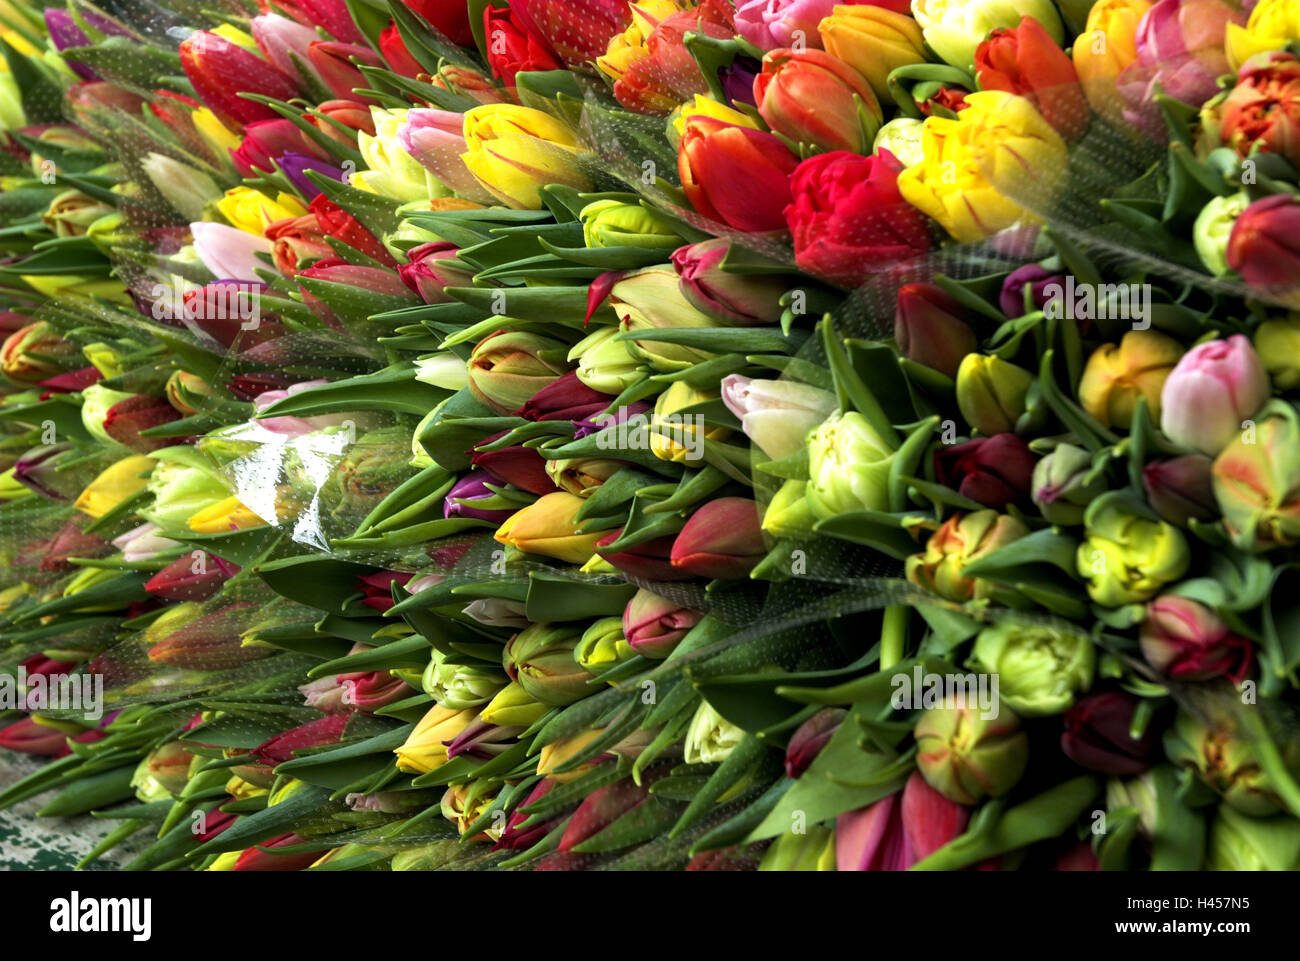 Stallo del mercato, i tulipani, Foto Stock